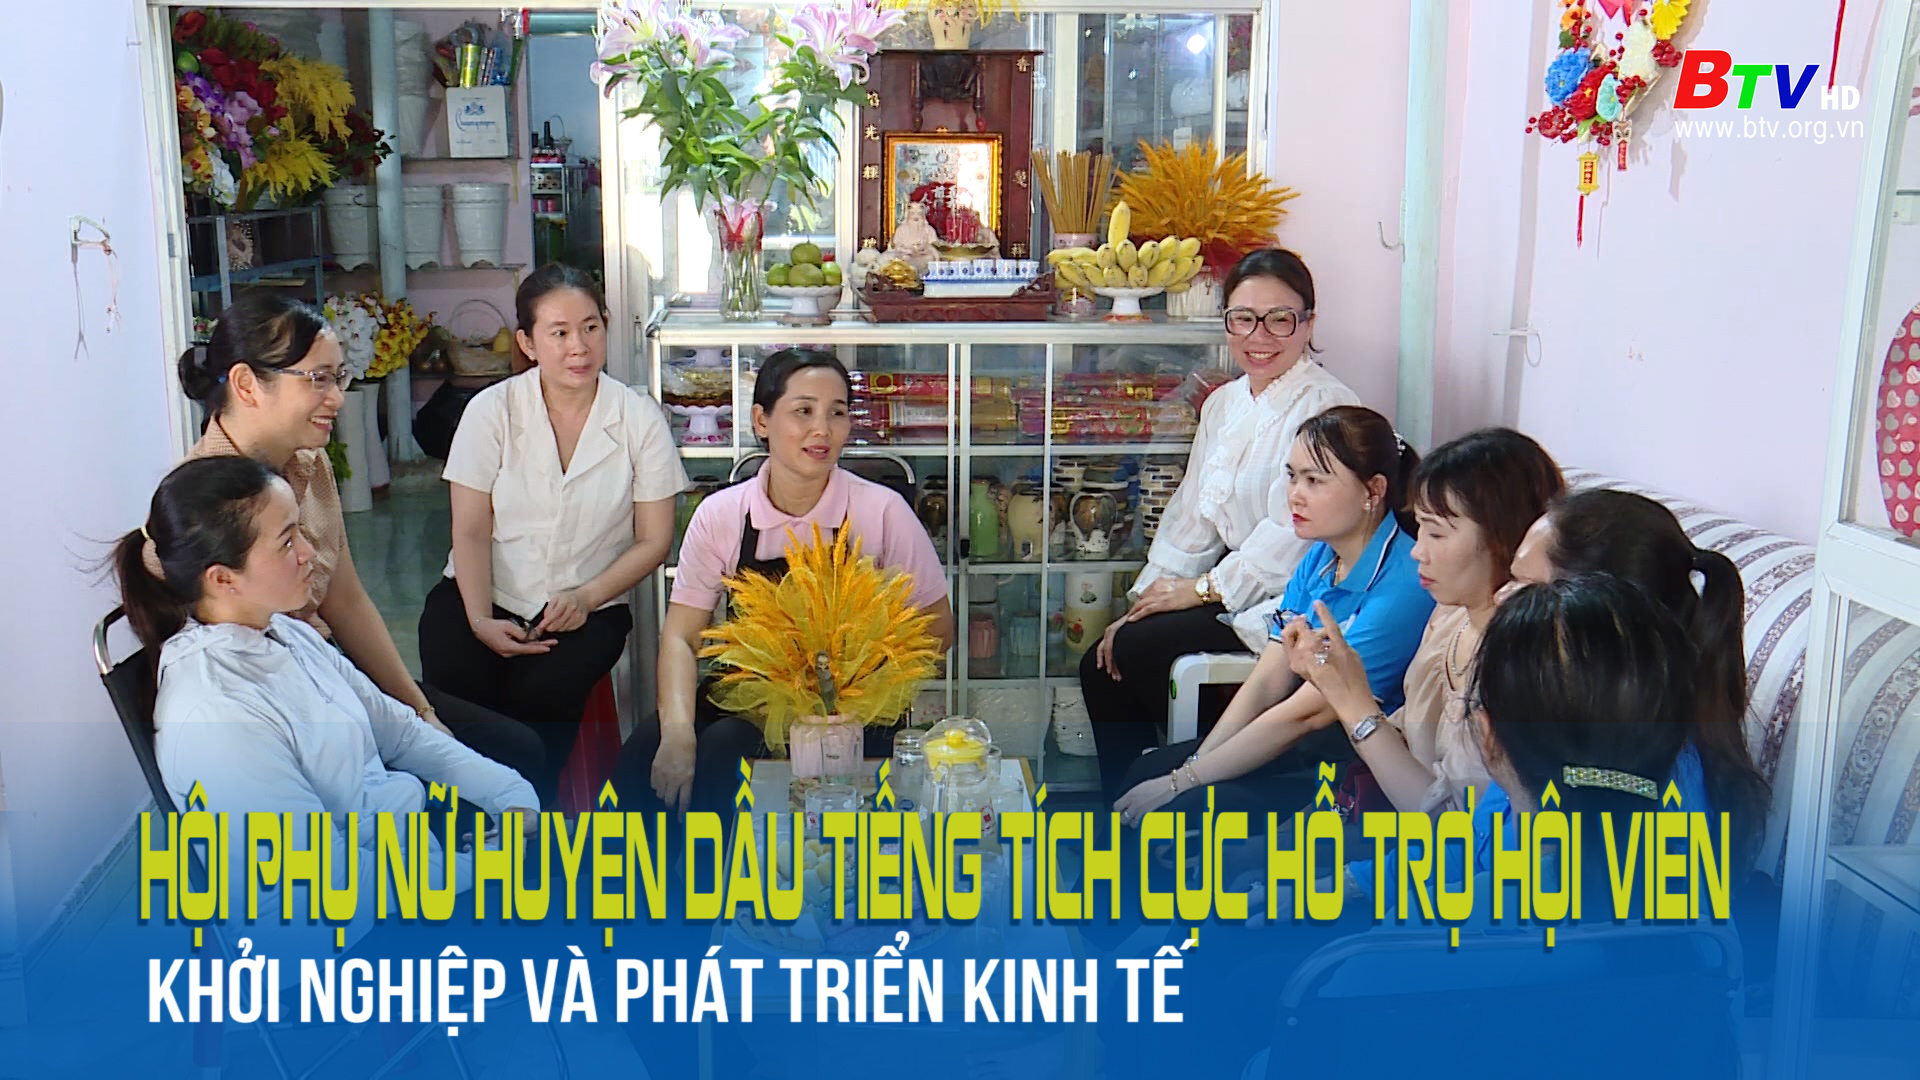 Hội phụ nữ huyện Dầu Tiếng tích cực hỗ trợ hội viên khởi nghiệp và phát triển kinh tế